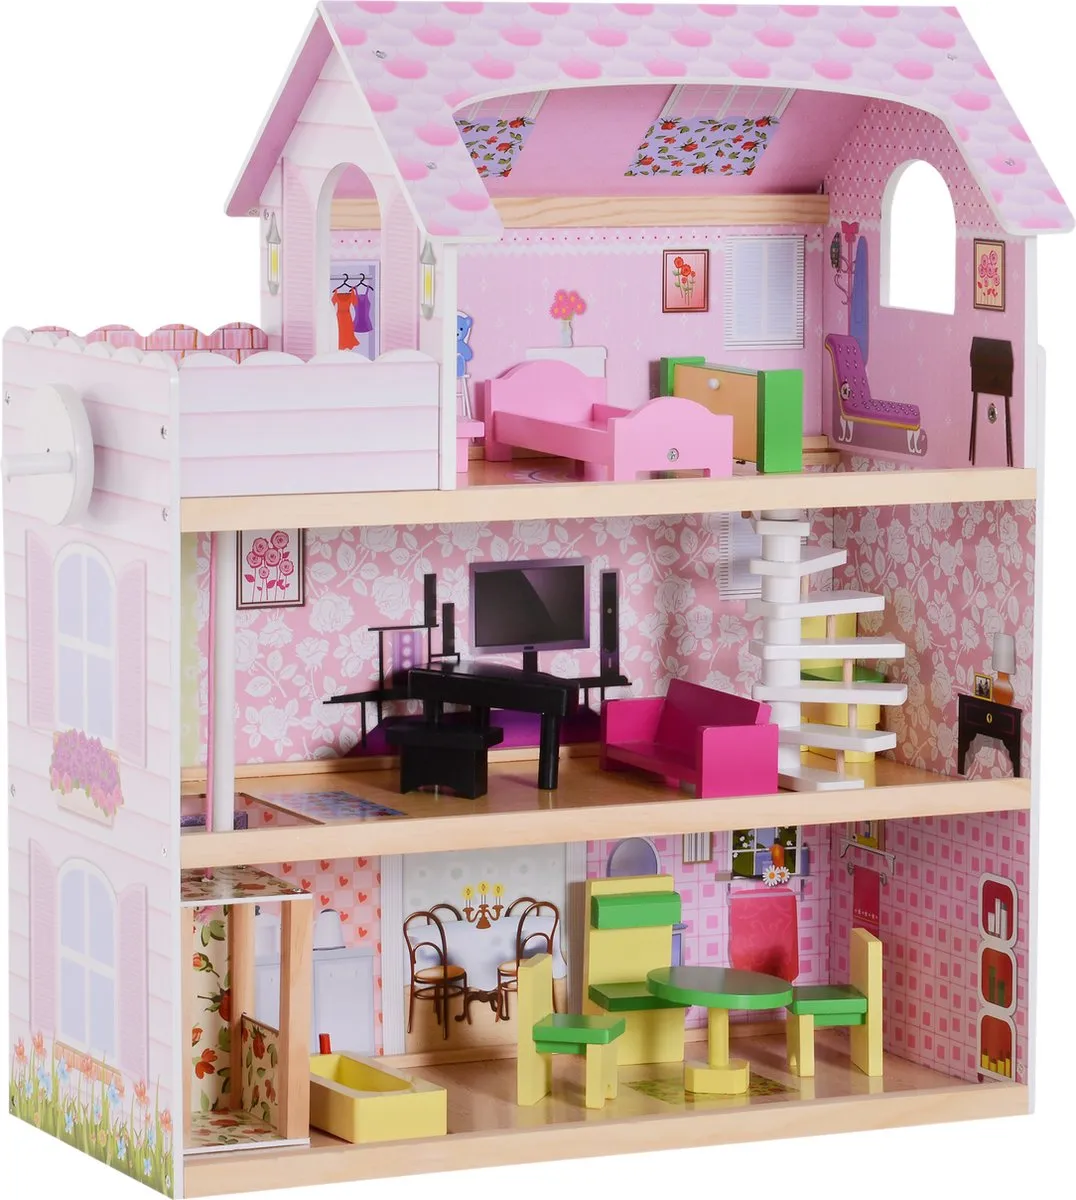 HOMCOM Kinderpoppenhuis poppenhuis barbiehuis poppenhuis met 3 verdiepingen met meubels 350-034 speelgoed